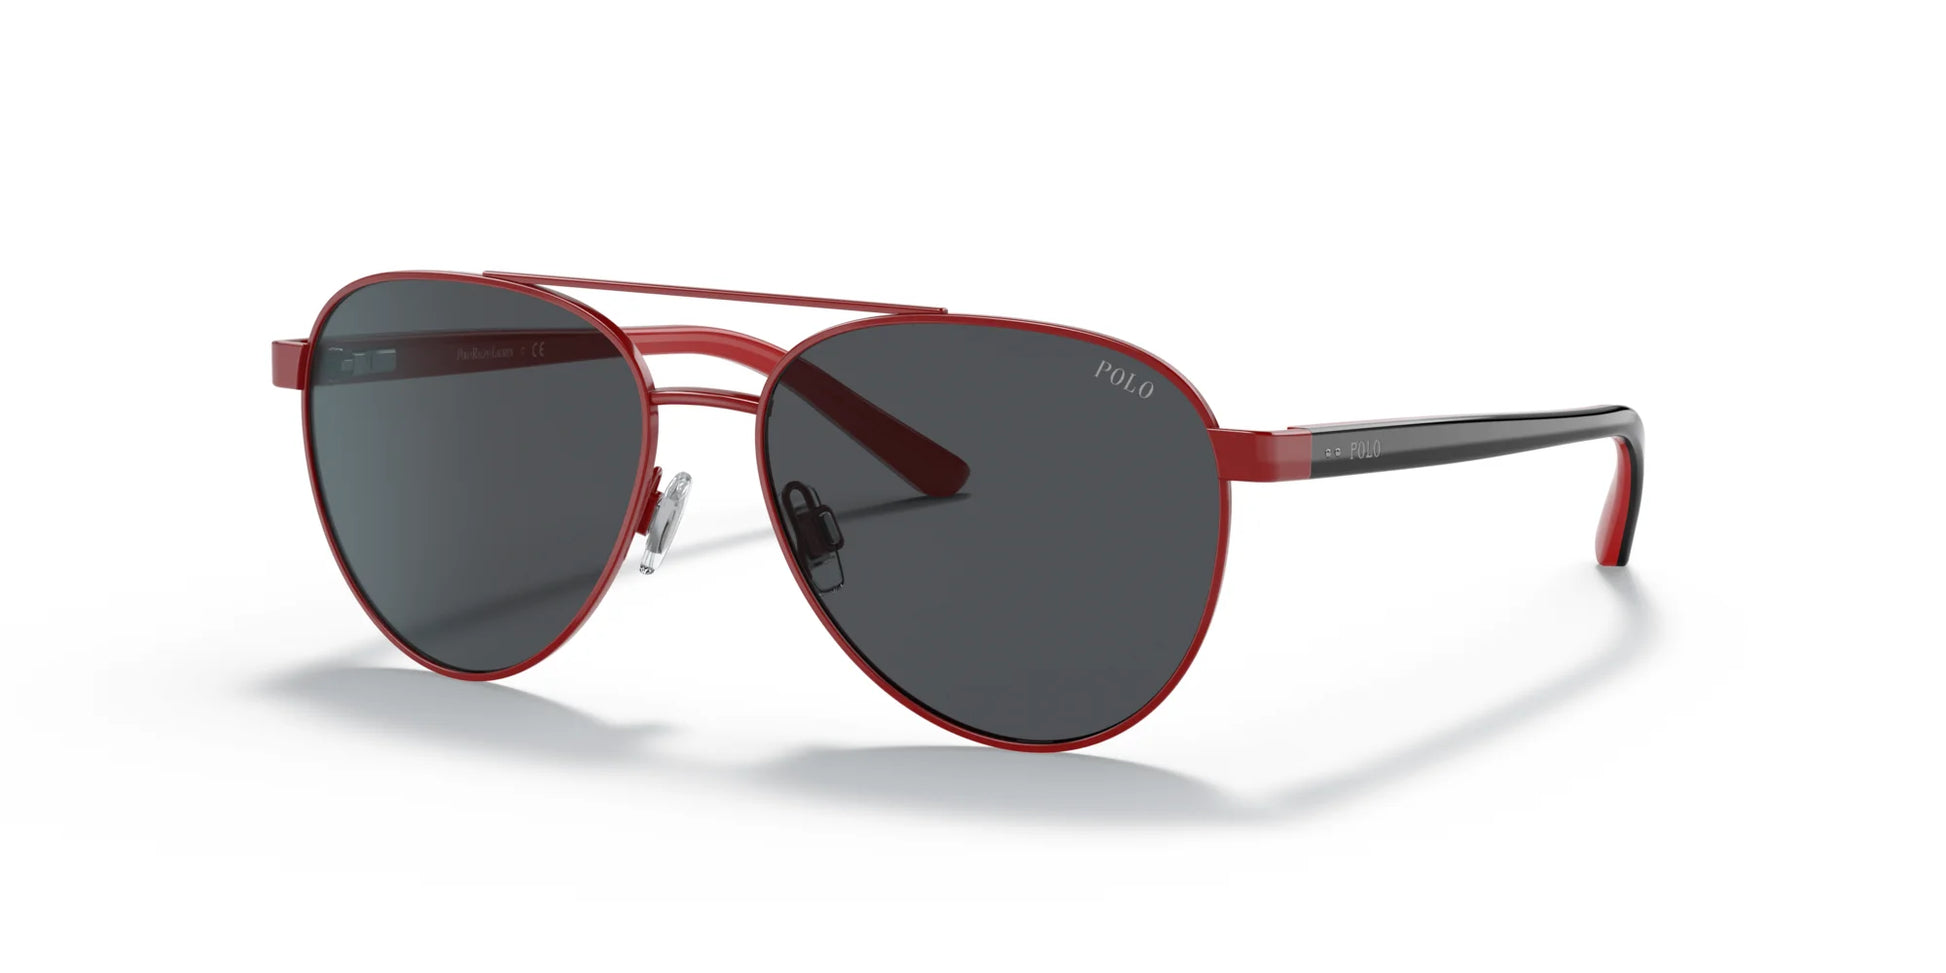 Polo PP9001 Sunglasses Shiny Red / Dark Grey